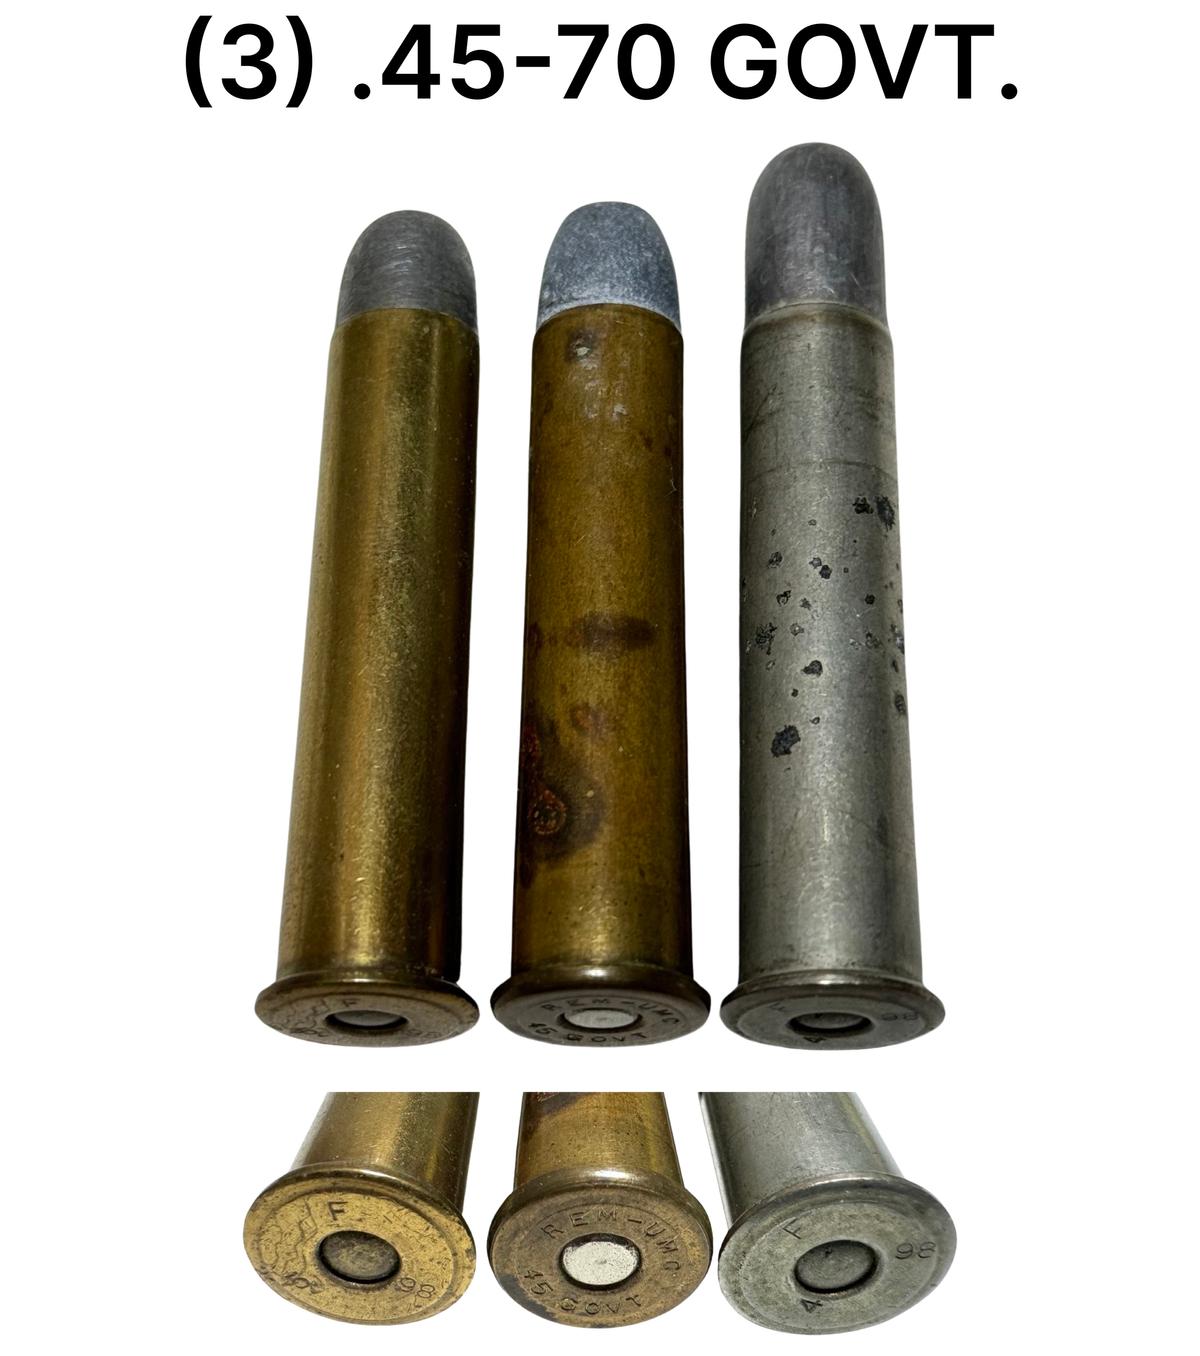 (3) 45-70 GOVT. Cartridges